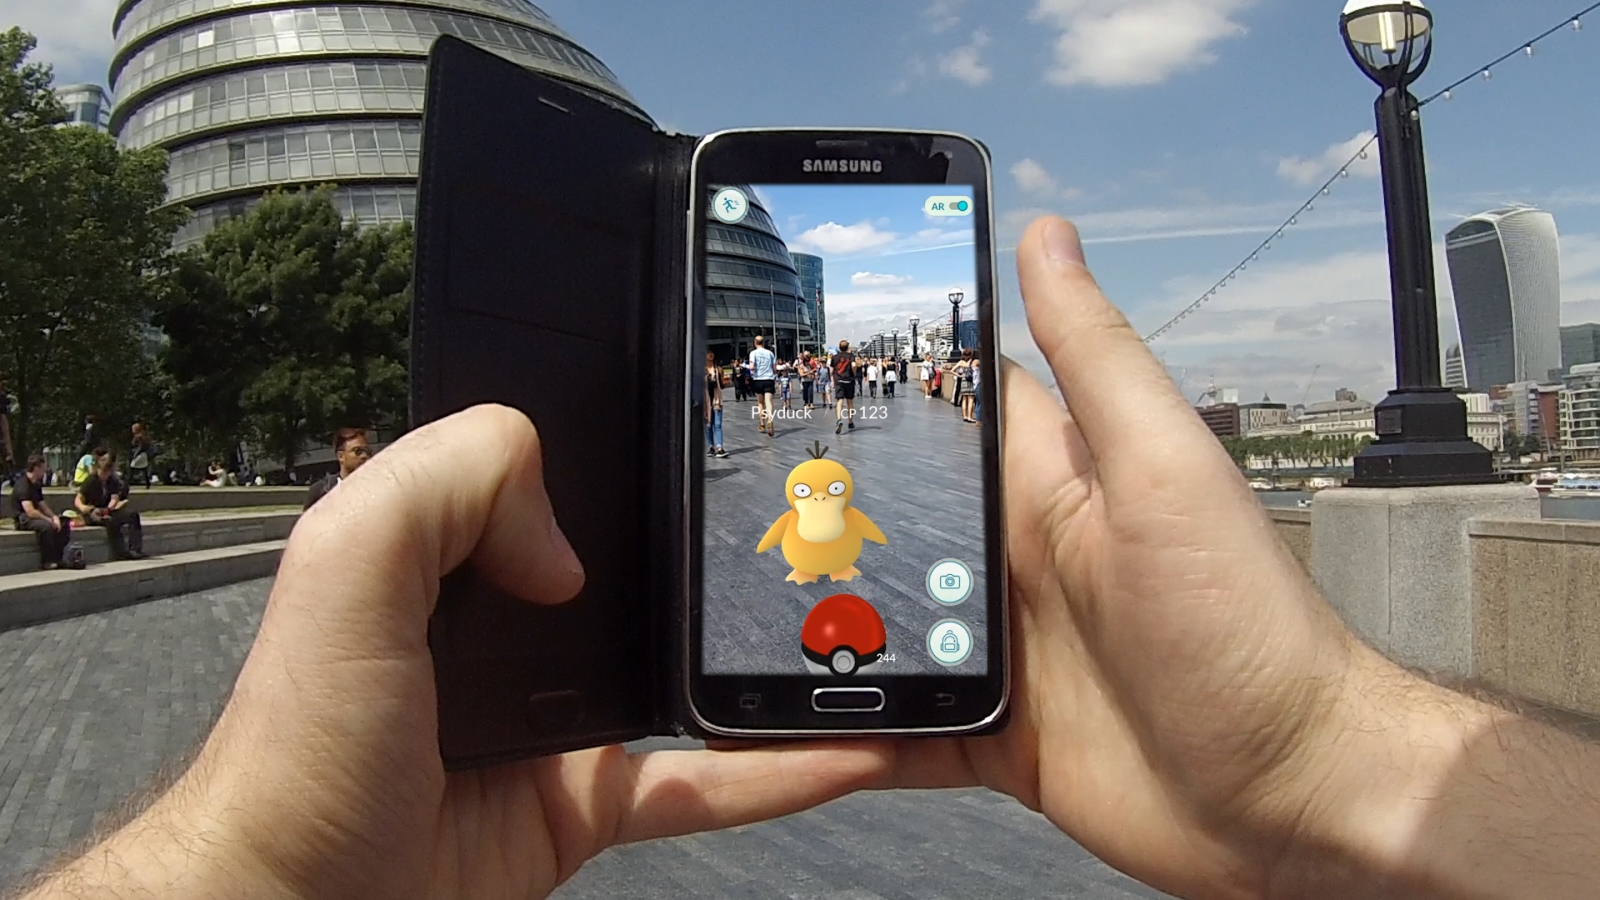 Pokemon Go demo in London